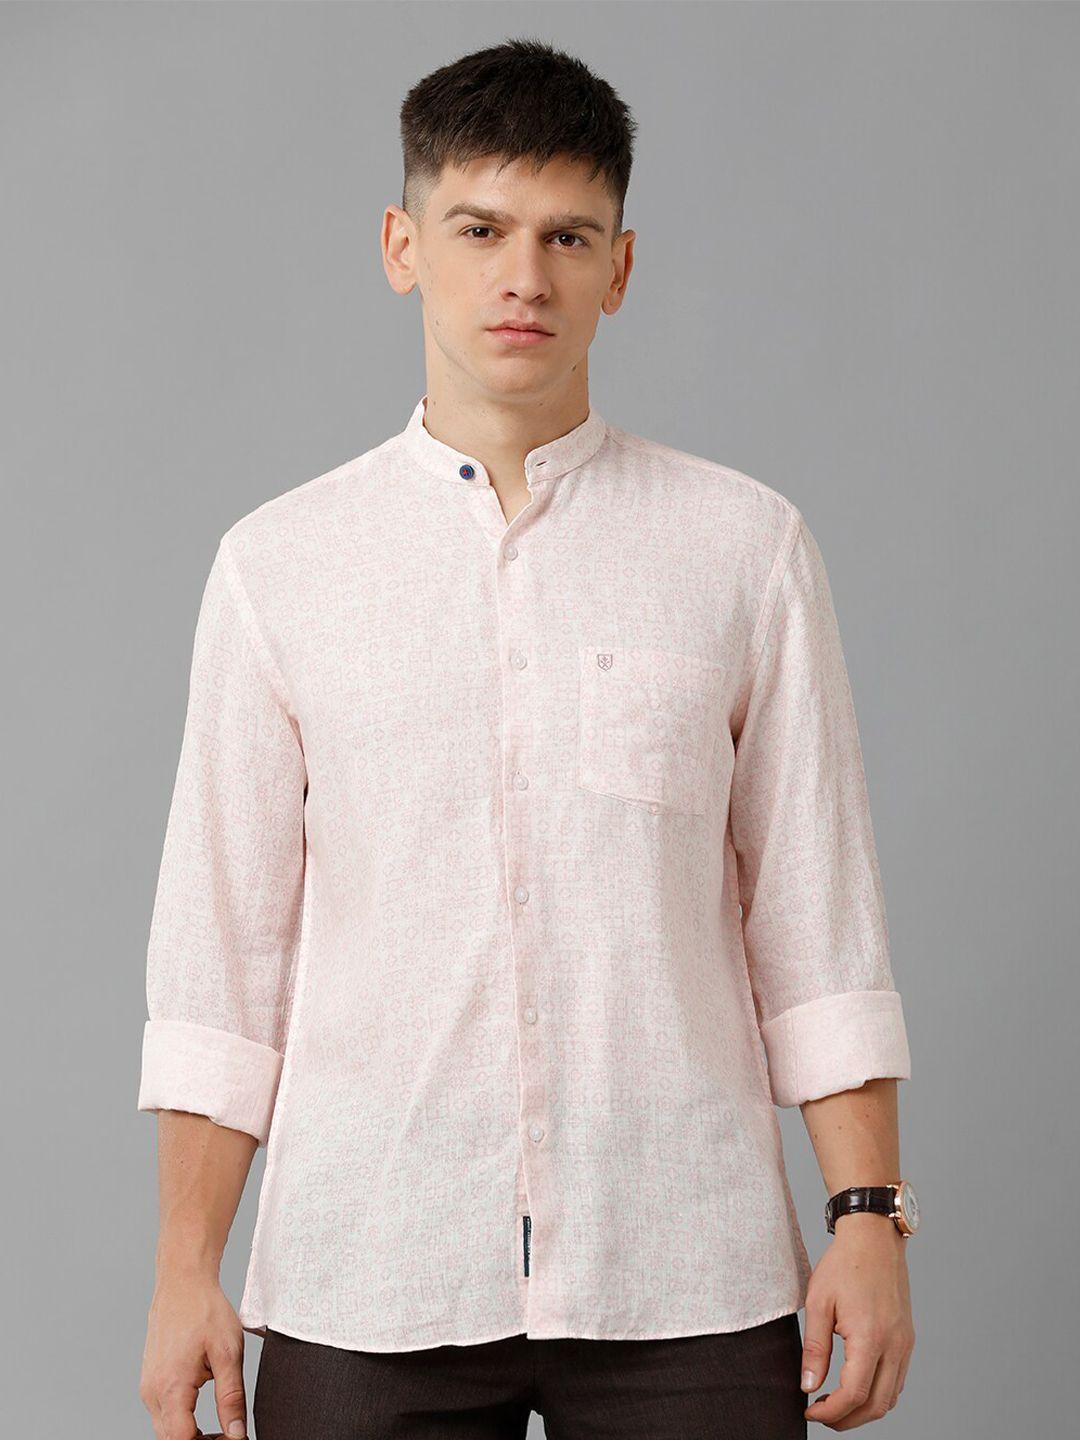 linen club printed spread collar linen casual shirt